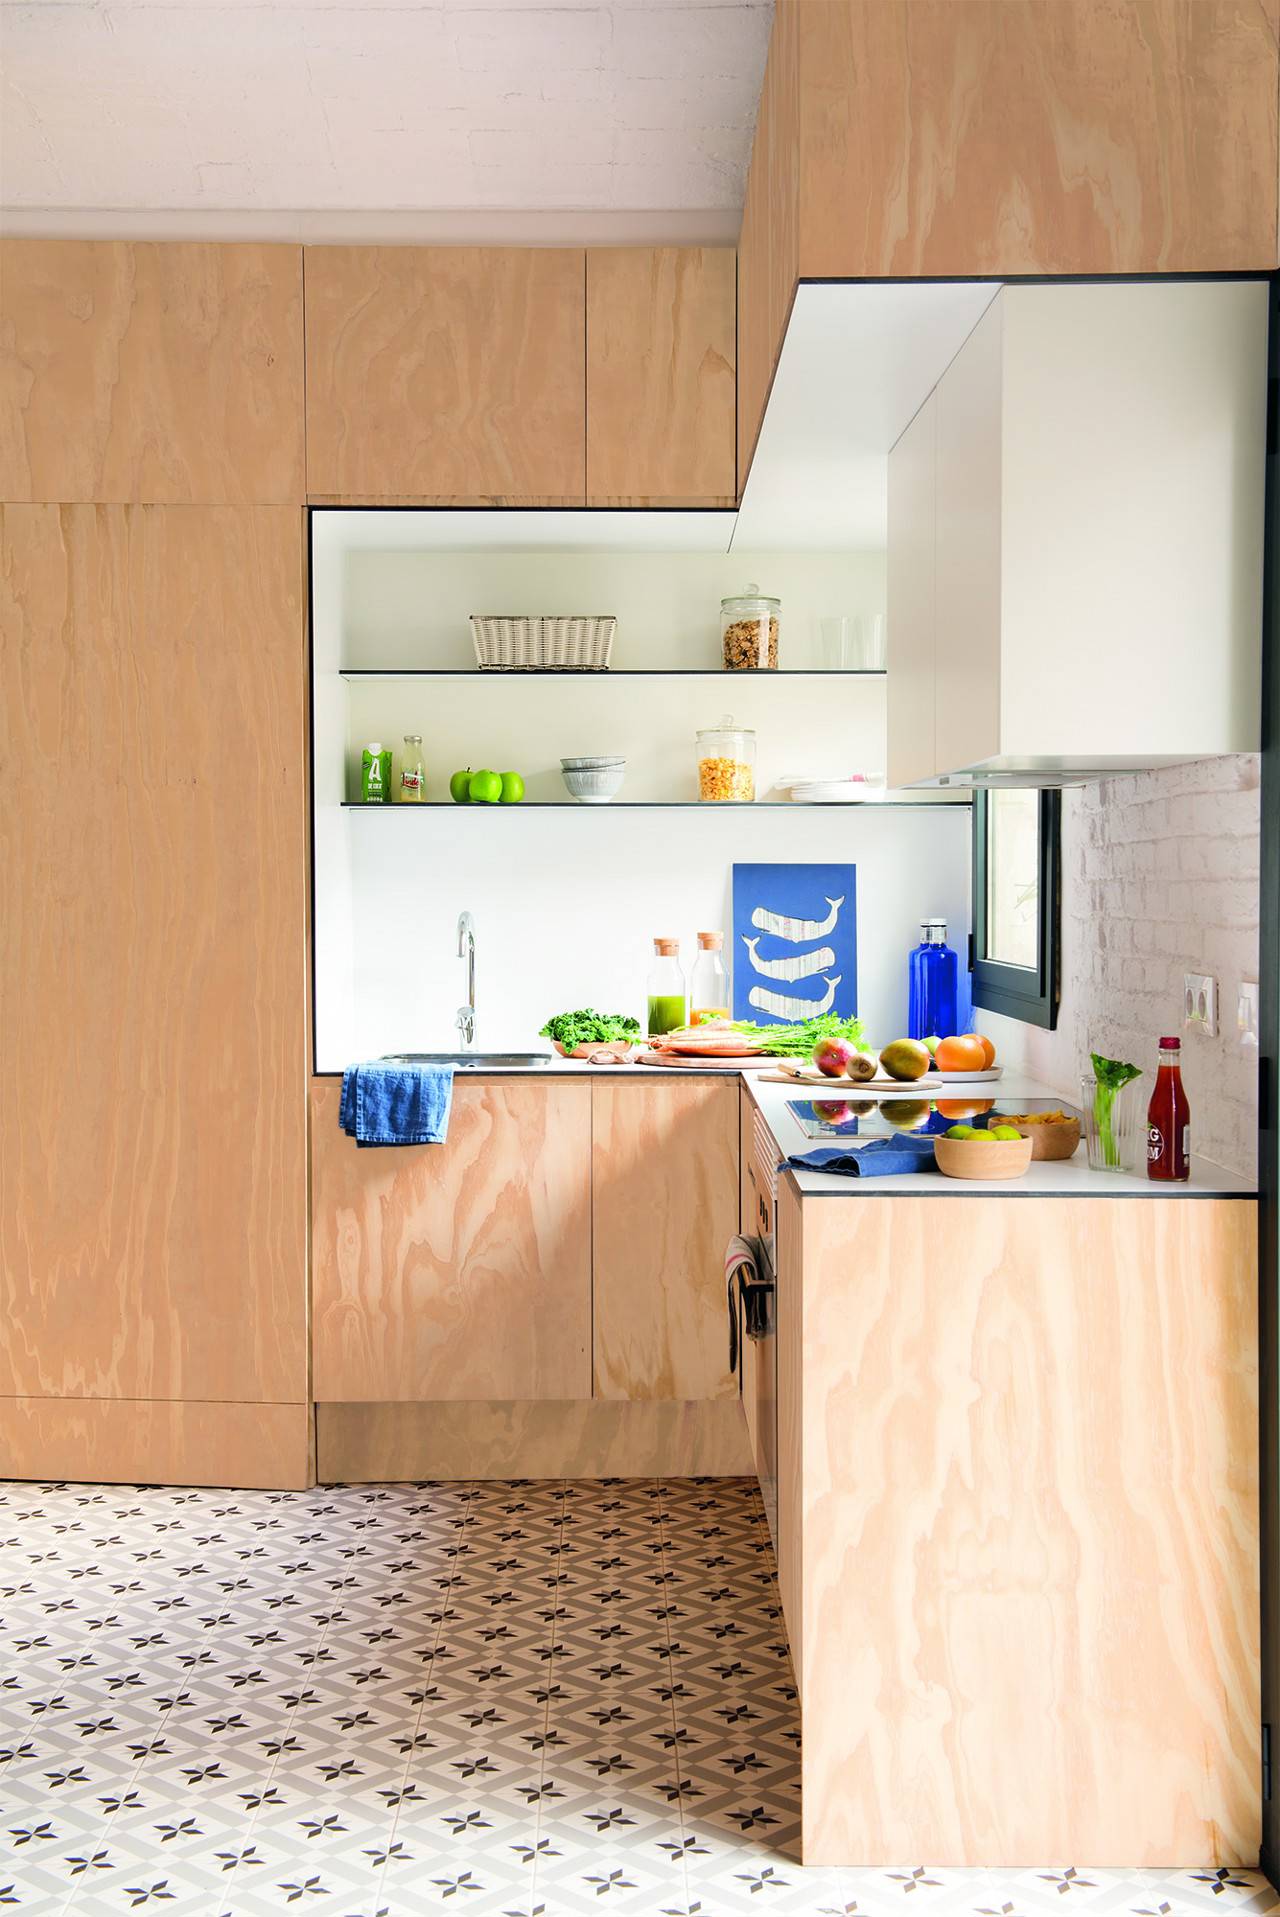 Las cocinas mini buscan optimizar el espacio dando más importancia a otras estancias